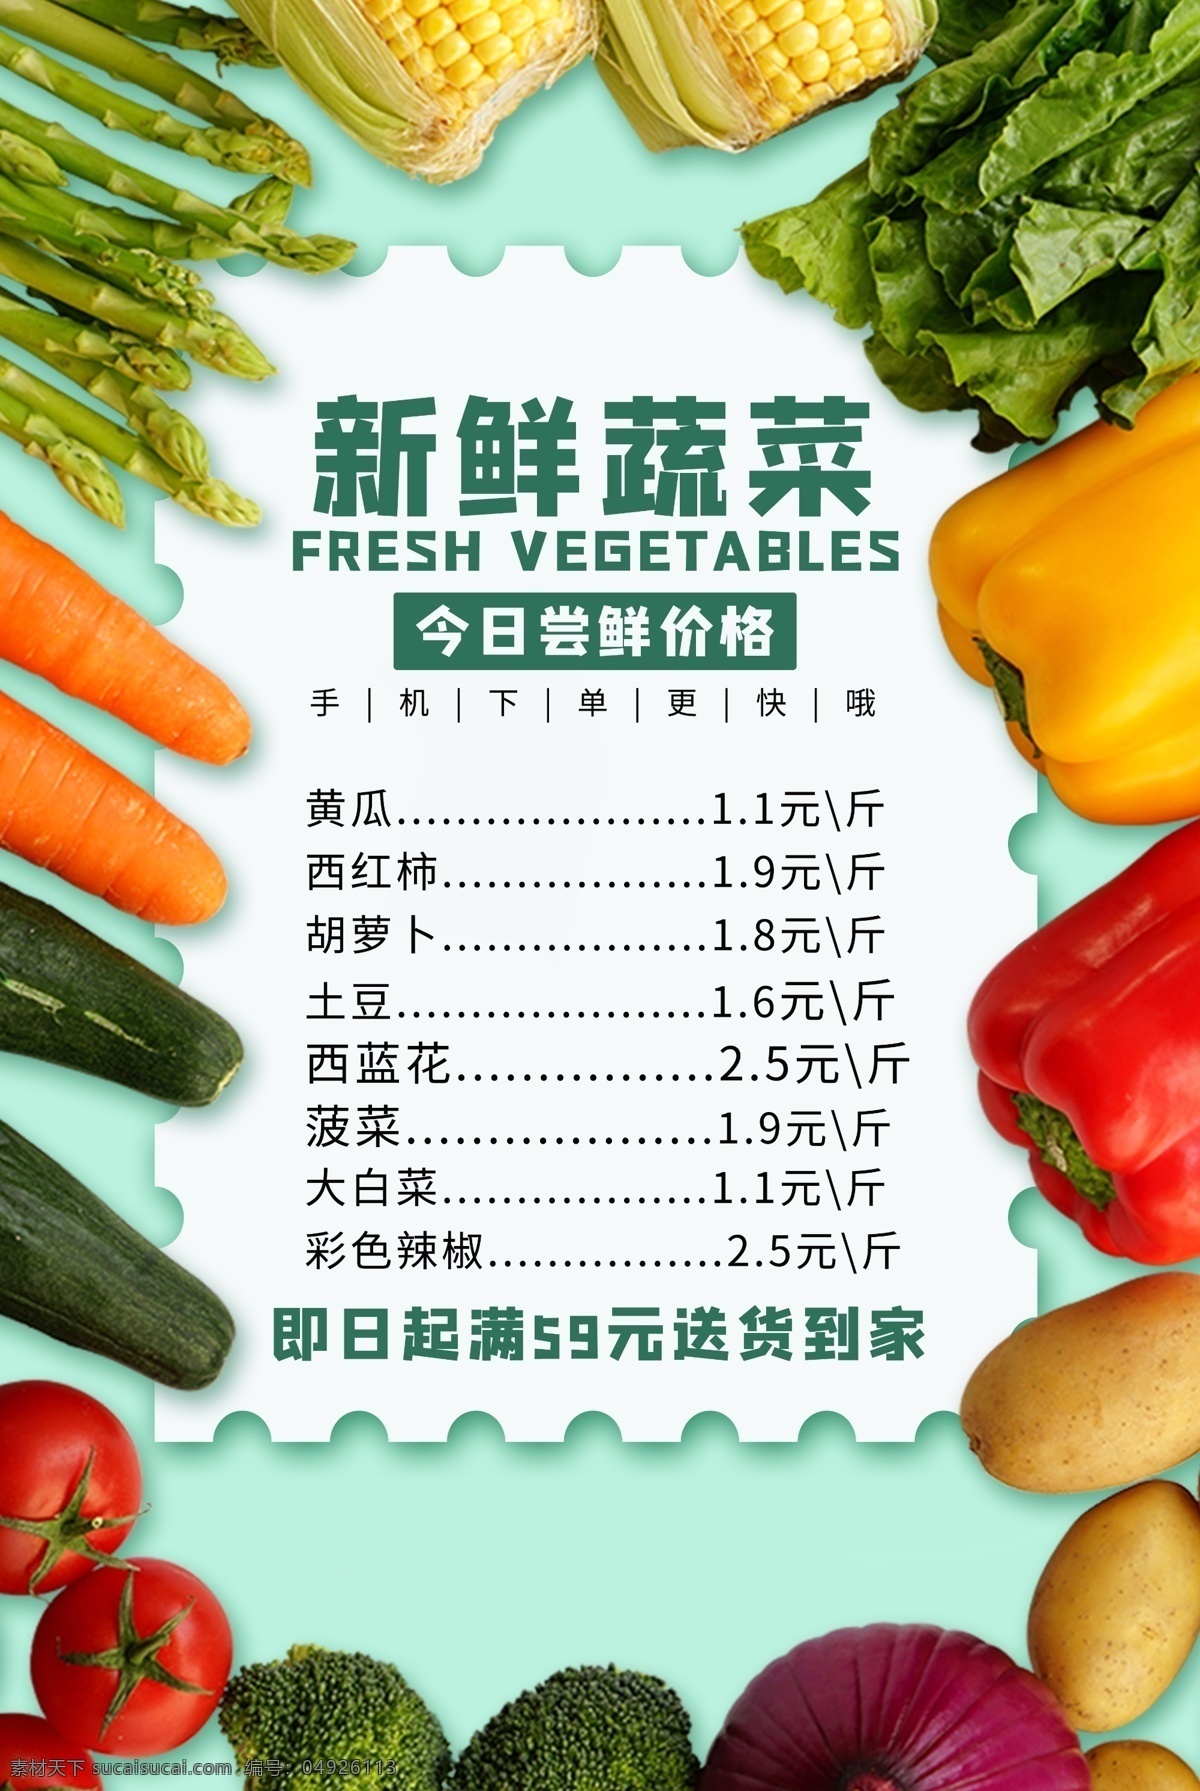 新年 蔬菜 超市 活动 背景 素材图片 新年蔬菜 海报